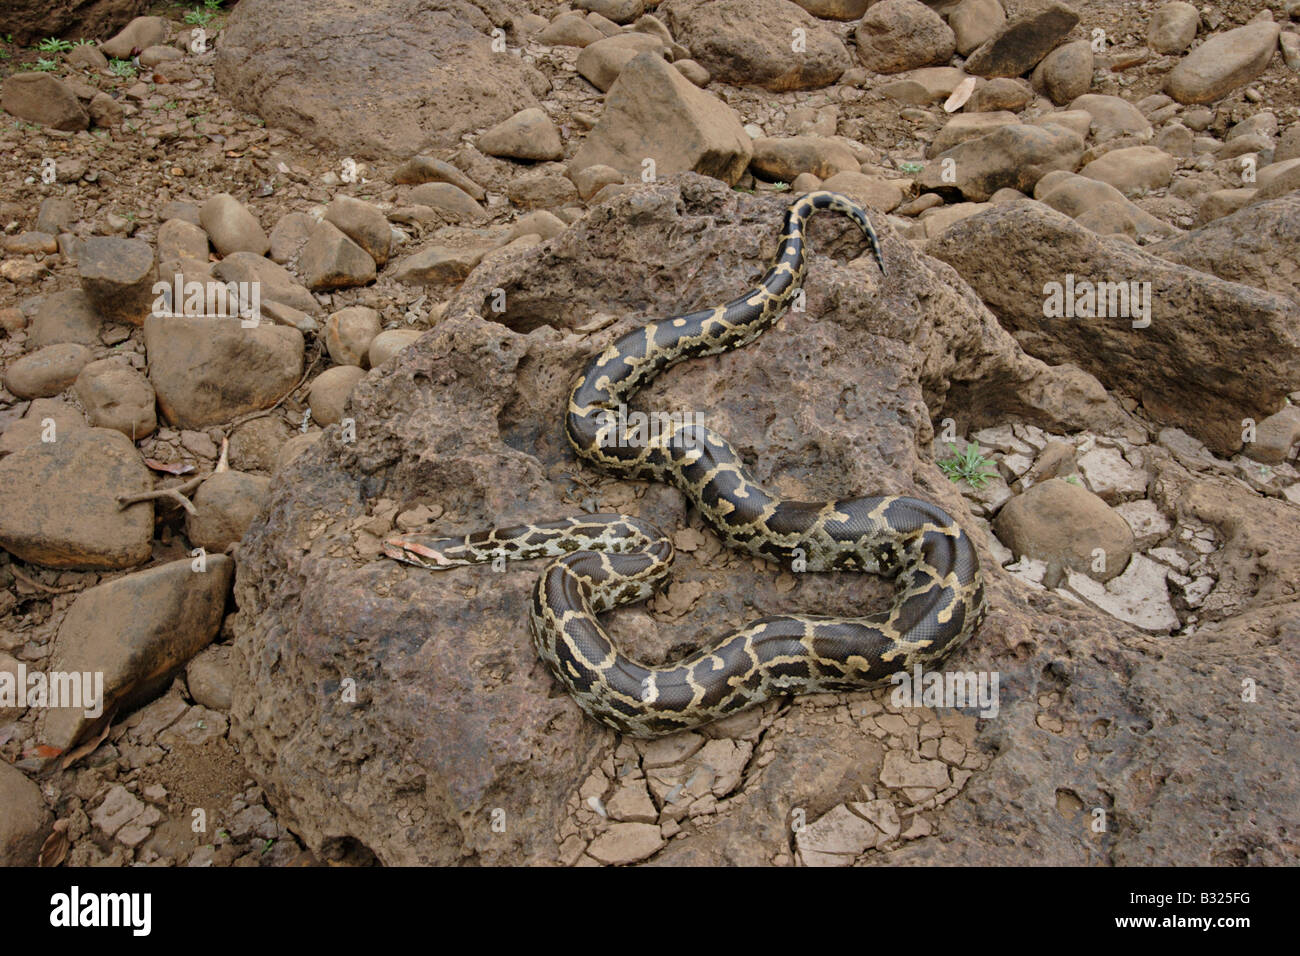 INDIAN ROCK PYTHON. Python molurus molurus, non venomous. rare. Called 'Ajgar' in Hindi. Stock Photo